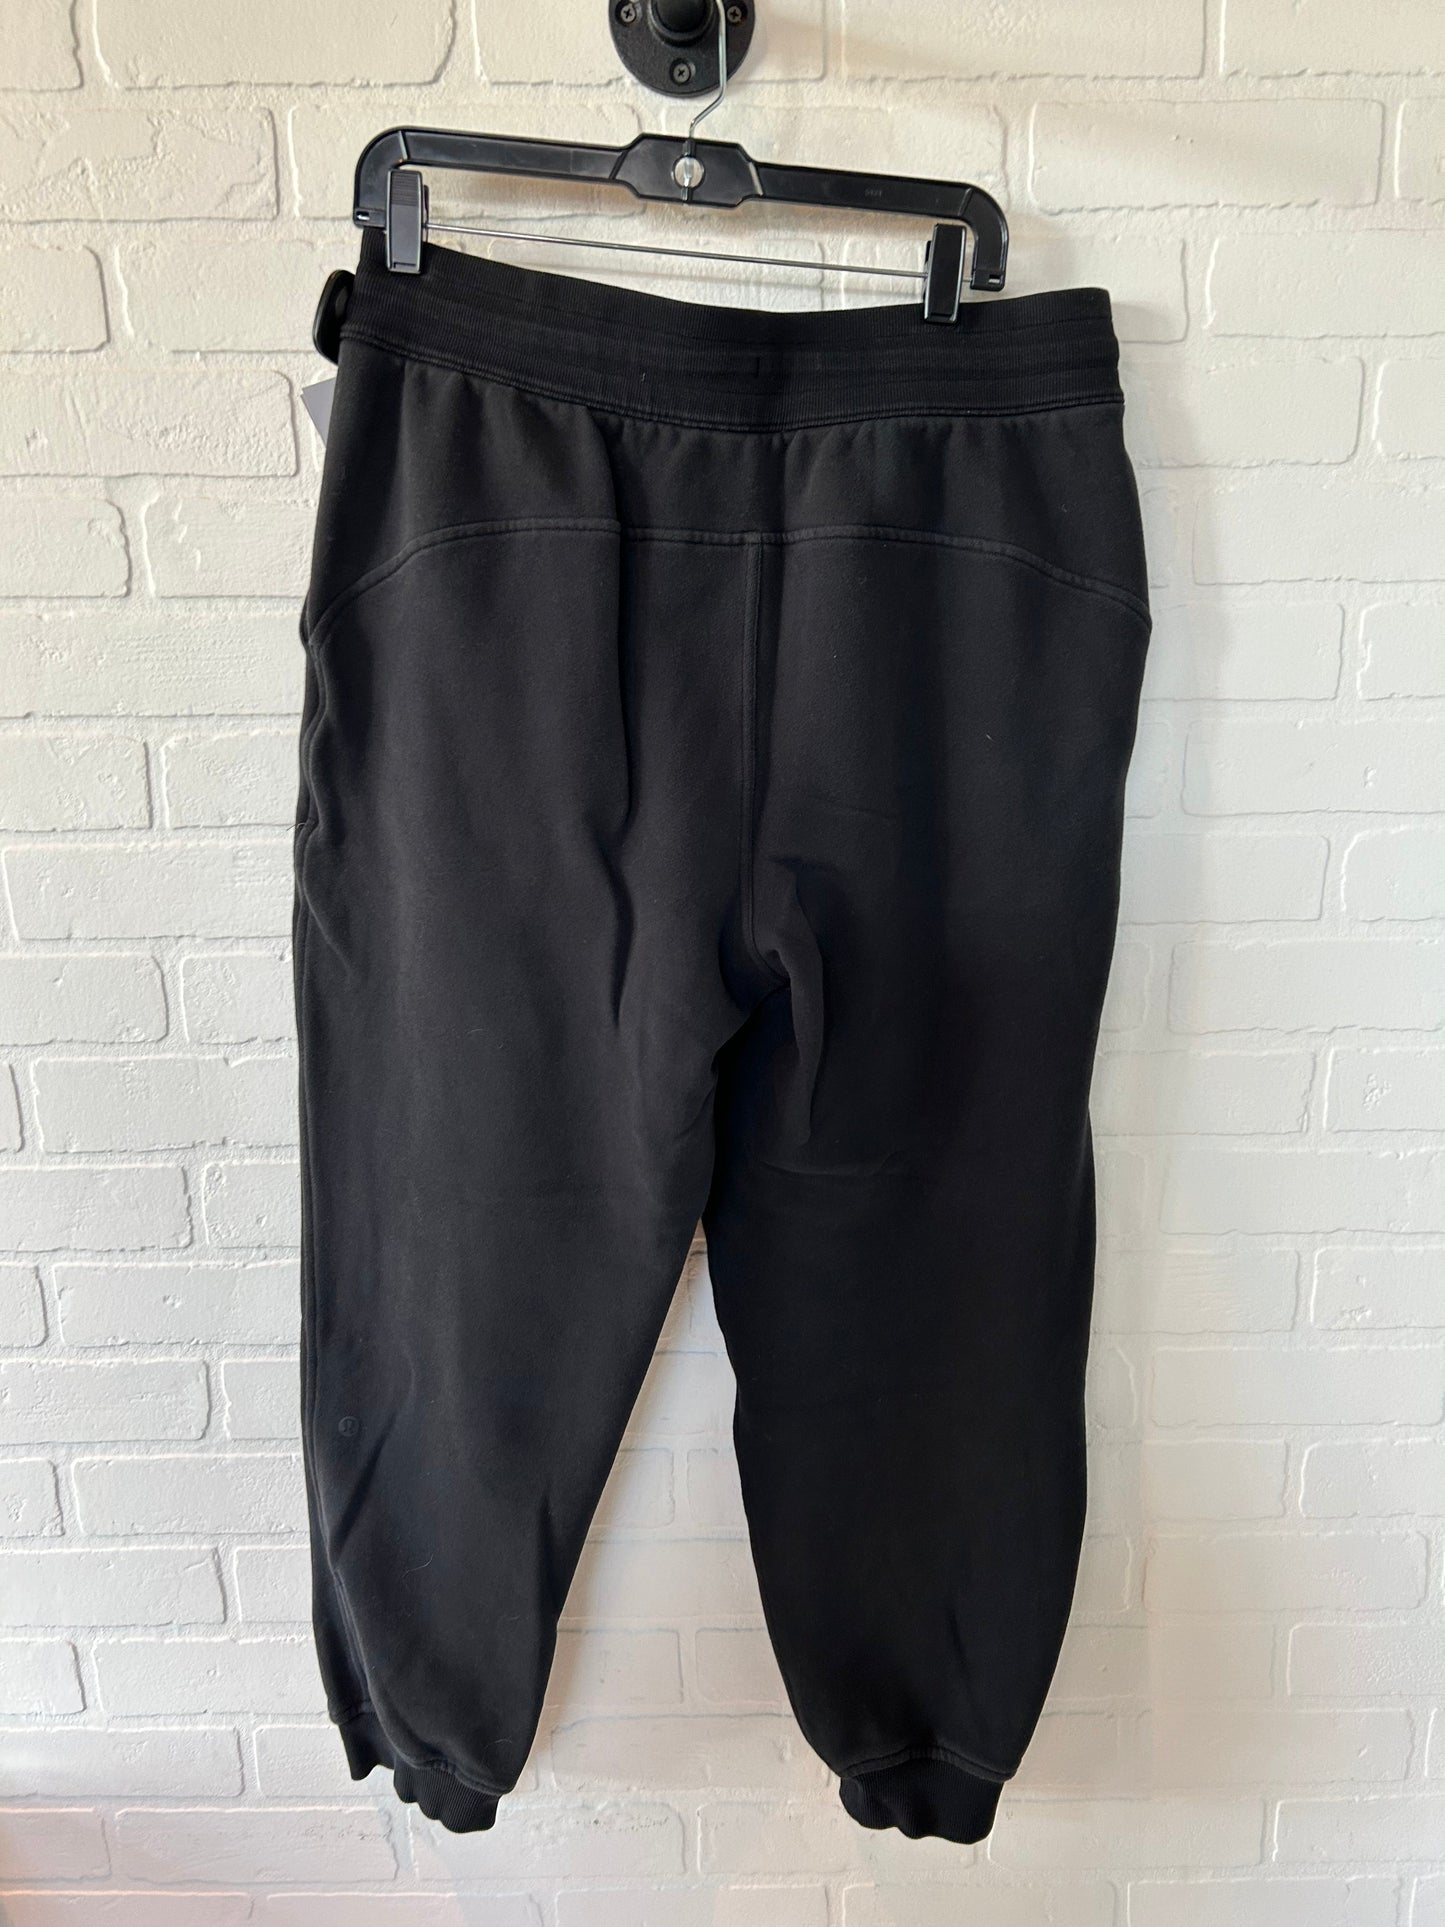 Black Athletic Pants Lululemon, Size 12